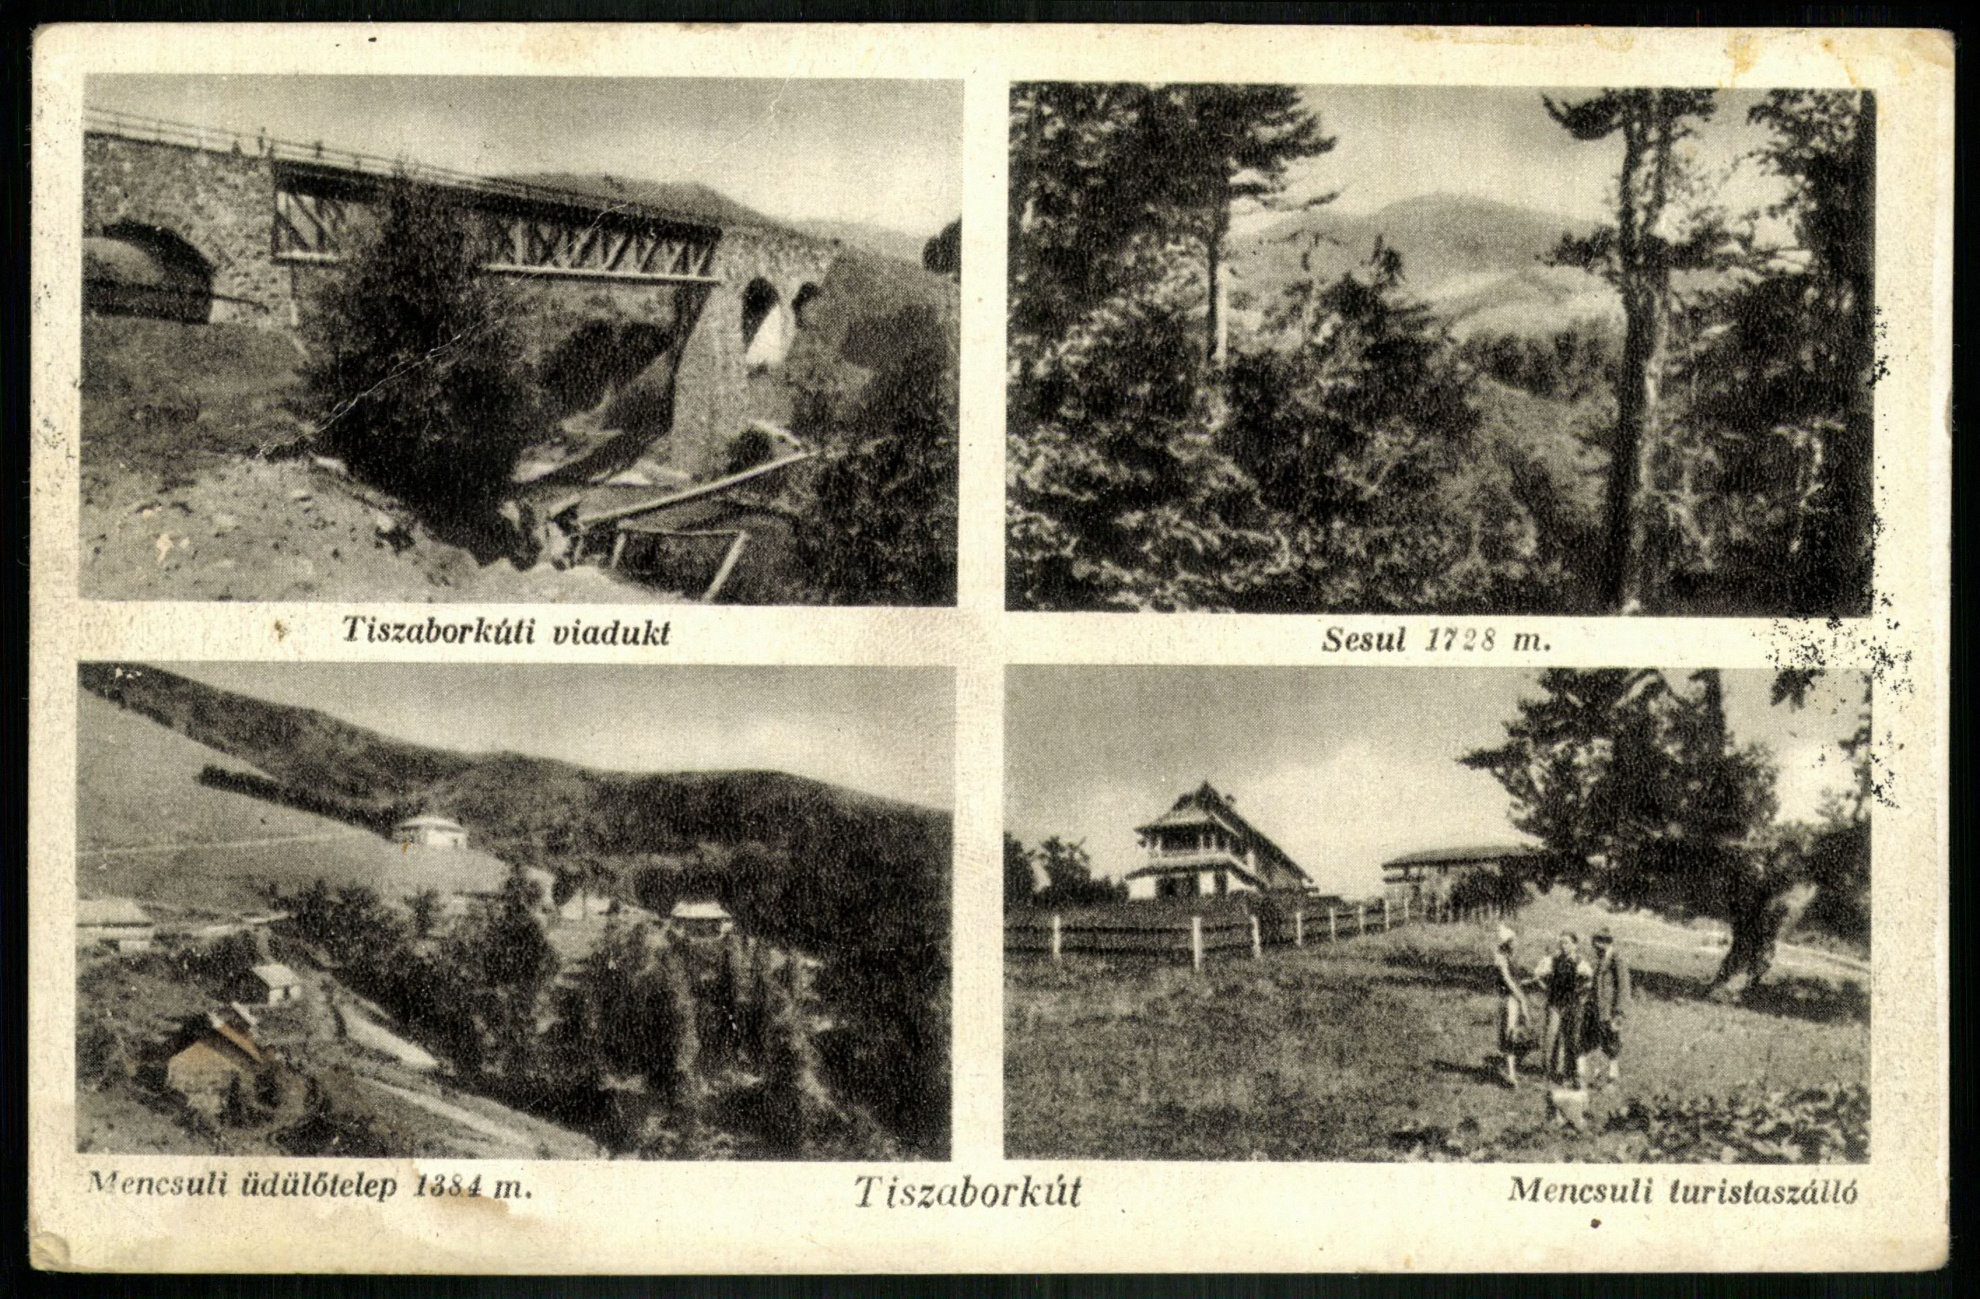 Tiszaborkút Tiszaborkúti viadukt, Sesul 1728 m, Mencsuli üdülőtelep 1384 m, Mencsuli turistaszálló (Magyar Kereskedelmi és Vendéglátóipari Múzeum CC BY-NC-ND)